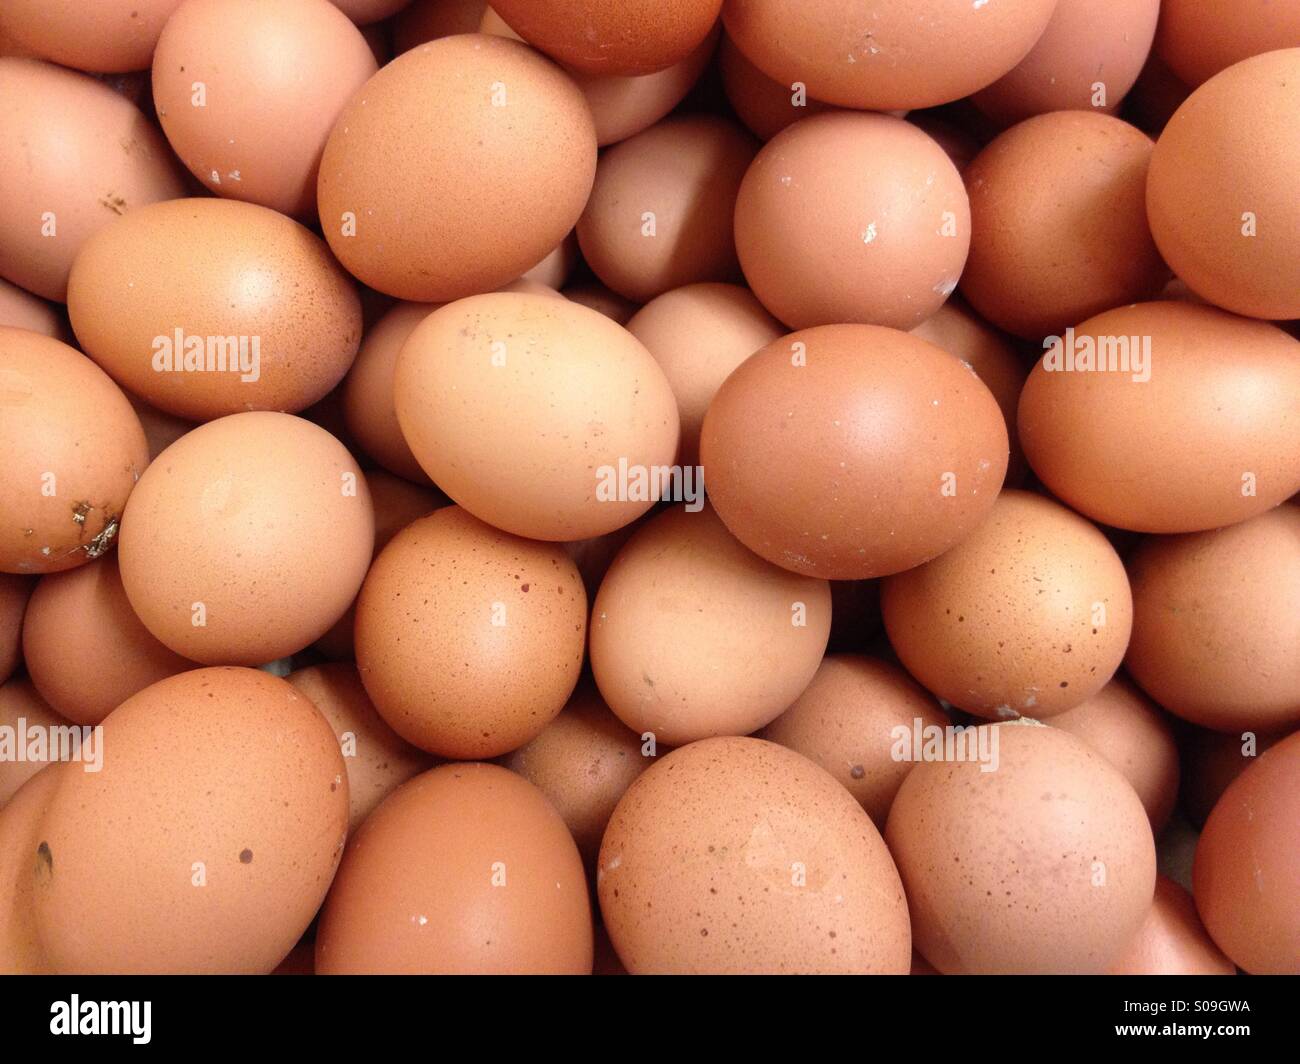 The Eggs Stock Photo